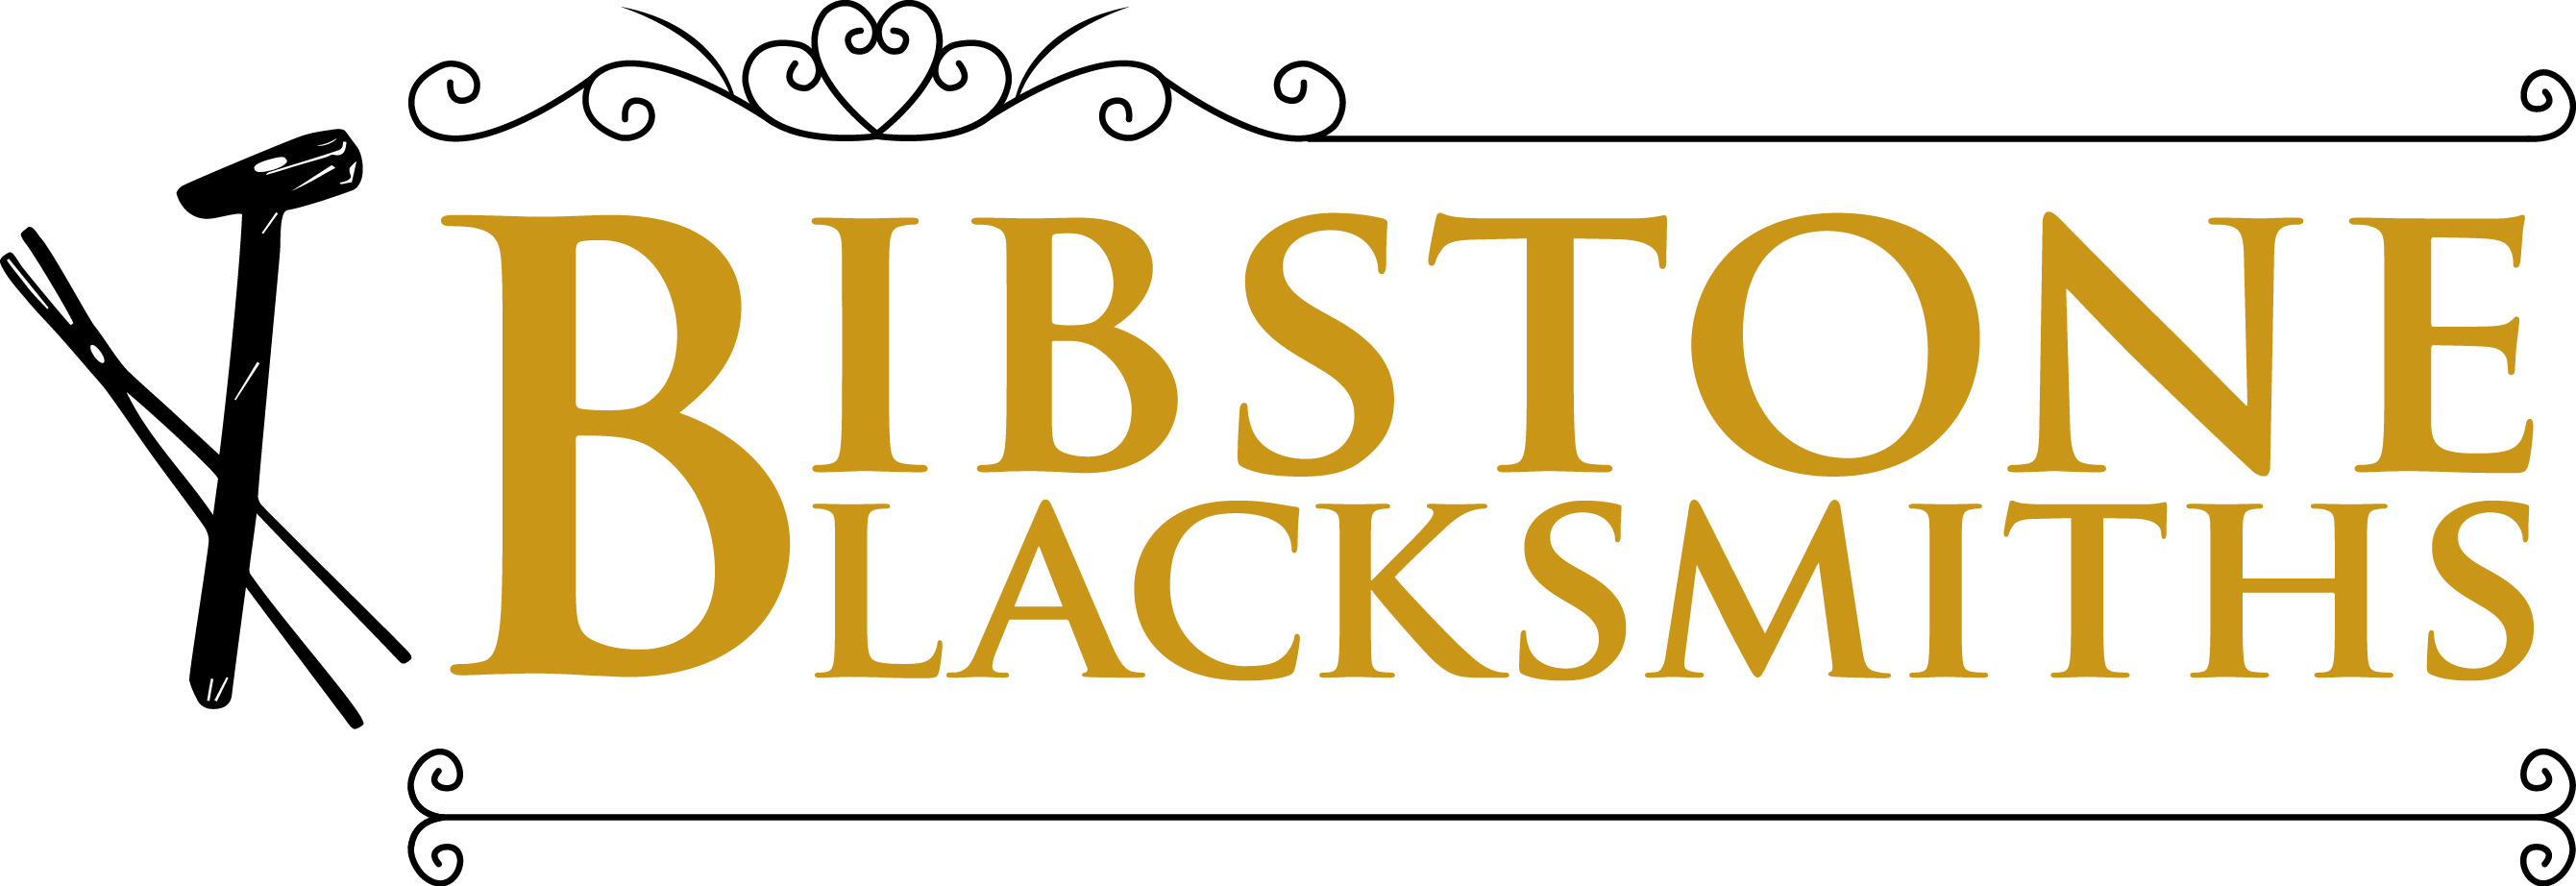 Bibstone Blacksmiths